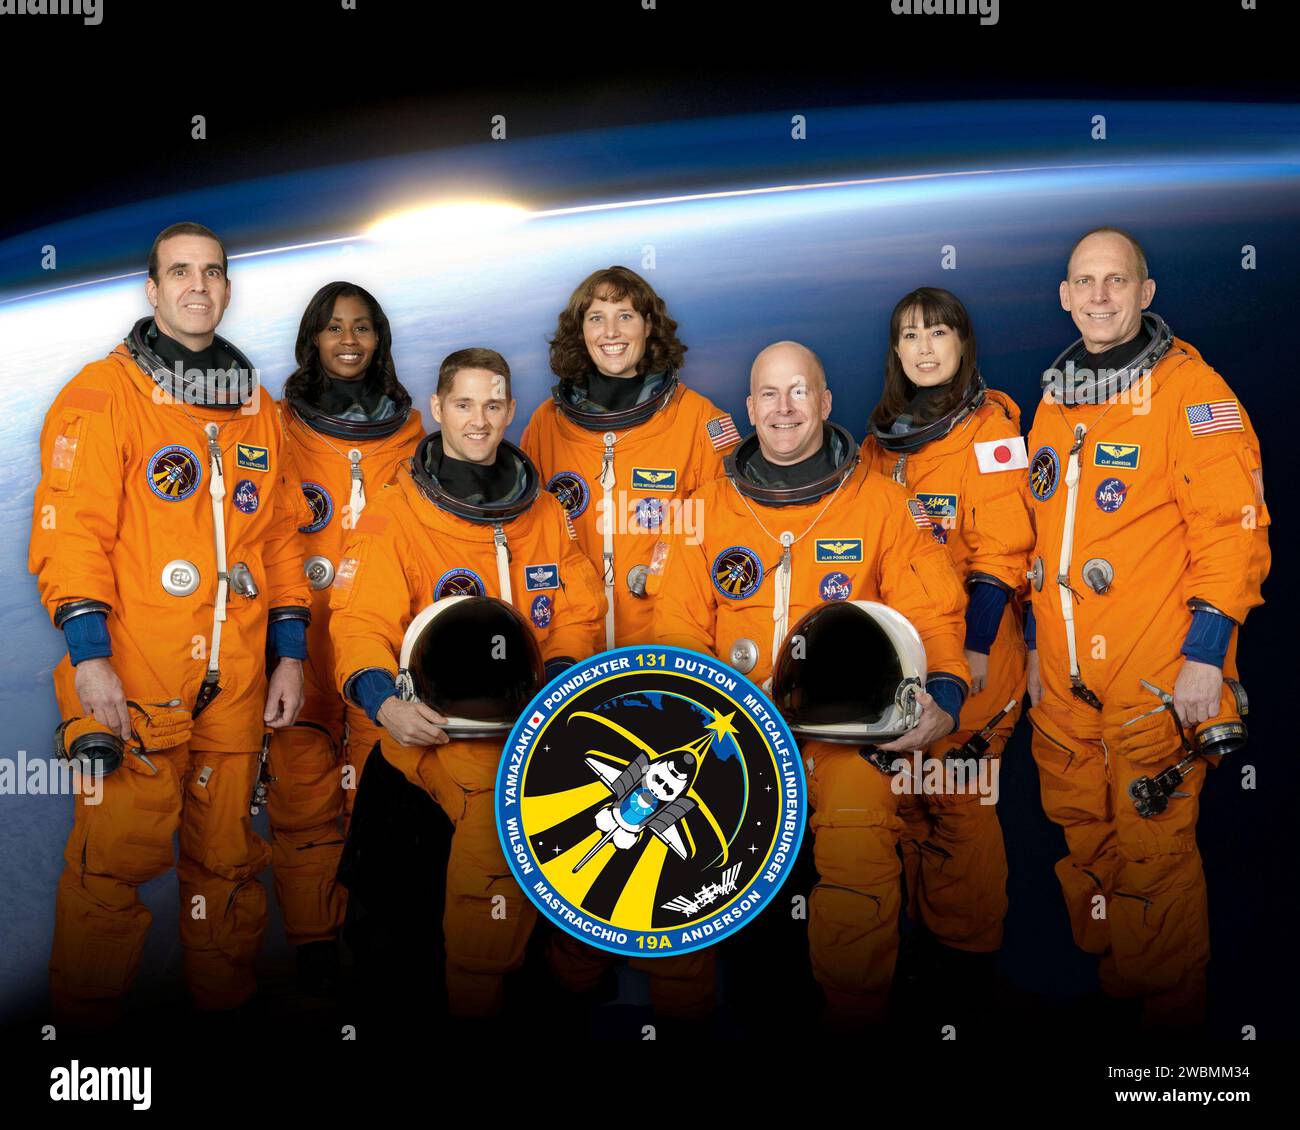 JOHNSON SPACE CENTER, Houston – STS131-S-002 – diese sieben Astronauten nehmen eine Pause vom Training und posieren für das STS-131 Crew-Porträt. Die NASA-Astronauten Alan Poindexter (rechts), Kommandant, und James P. Dutton Jr., Pilot. Von links (stehend) sind die NASA-Astronauten Rick Mastracchio, Stephanie Wilson, Dorothy Metcalf-Lindenburger, die Japan Aerospace Exploration Agency (JAXA) Astronauten Naoko Yamazaki und die NASA-Astronauten Clayton Anderson, allesamt Missionsspezialisten. Stockfoto